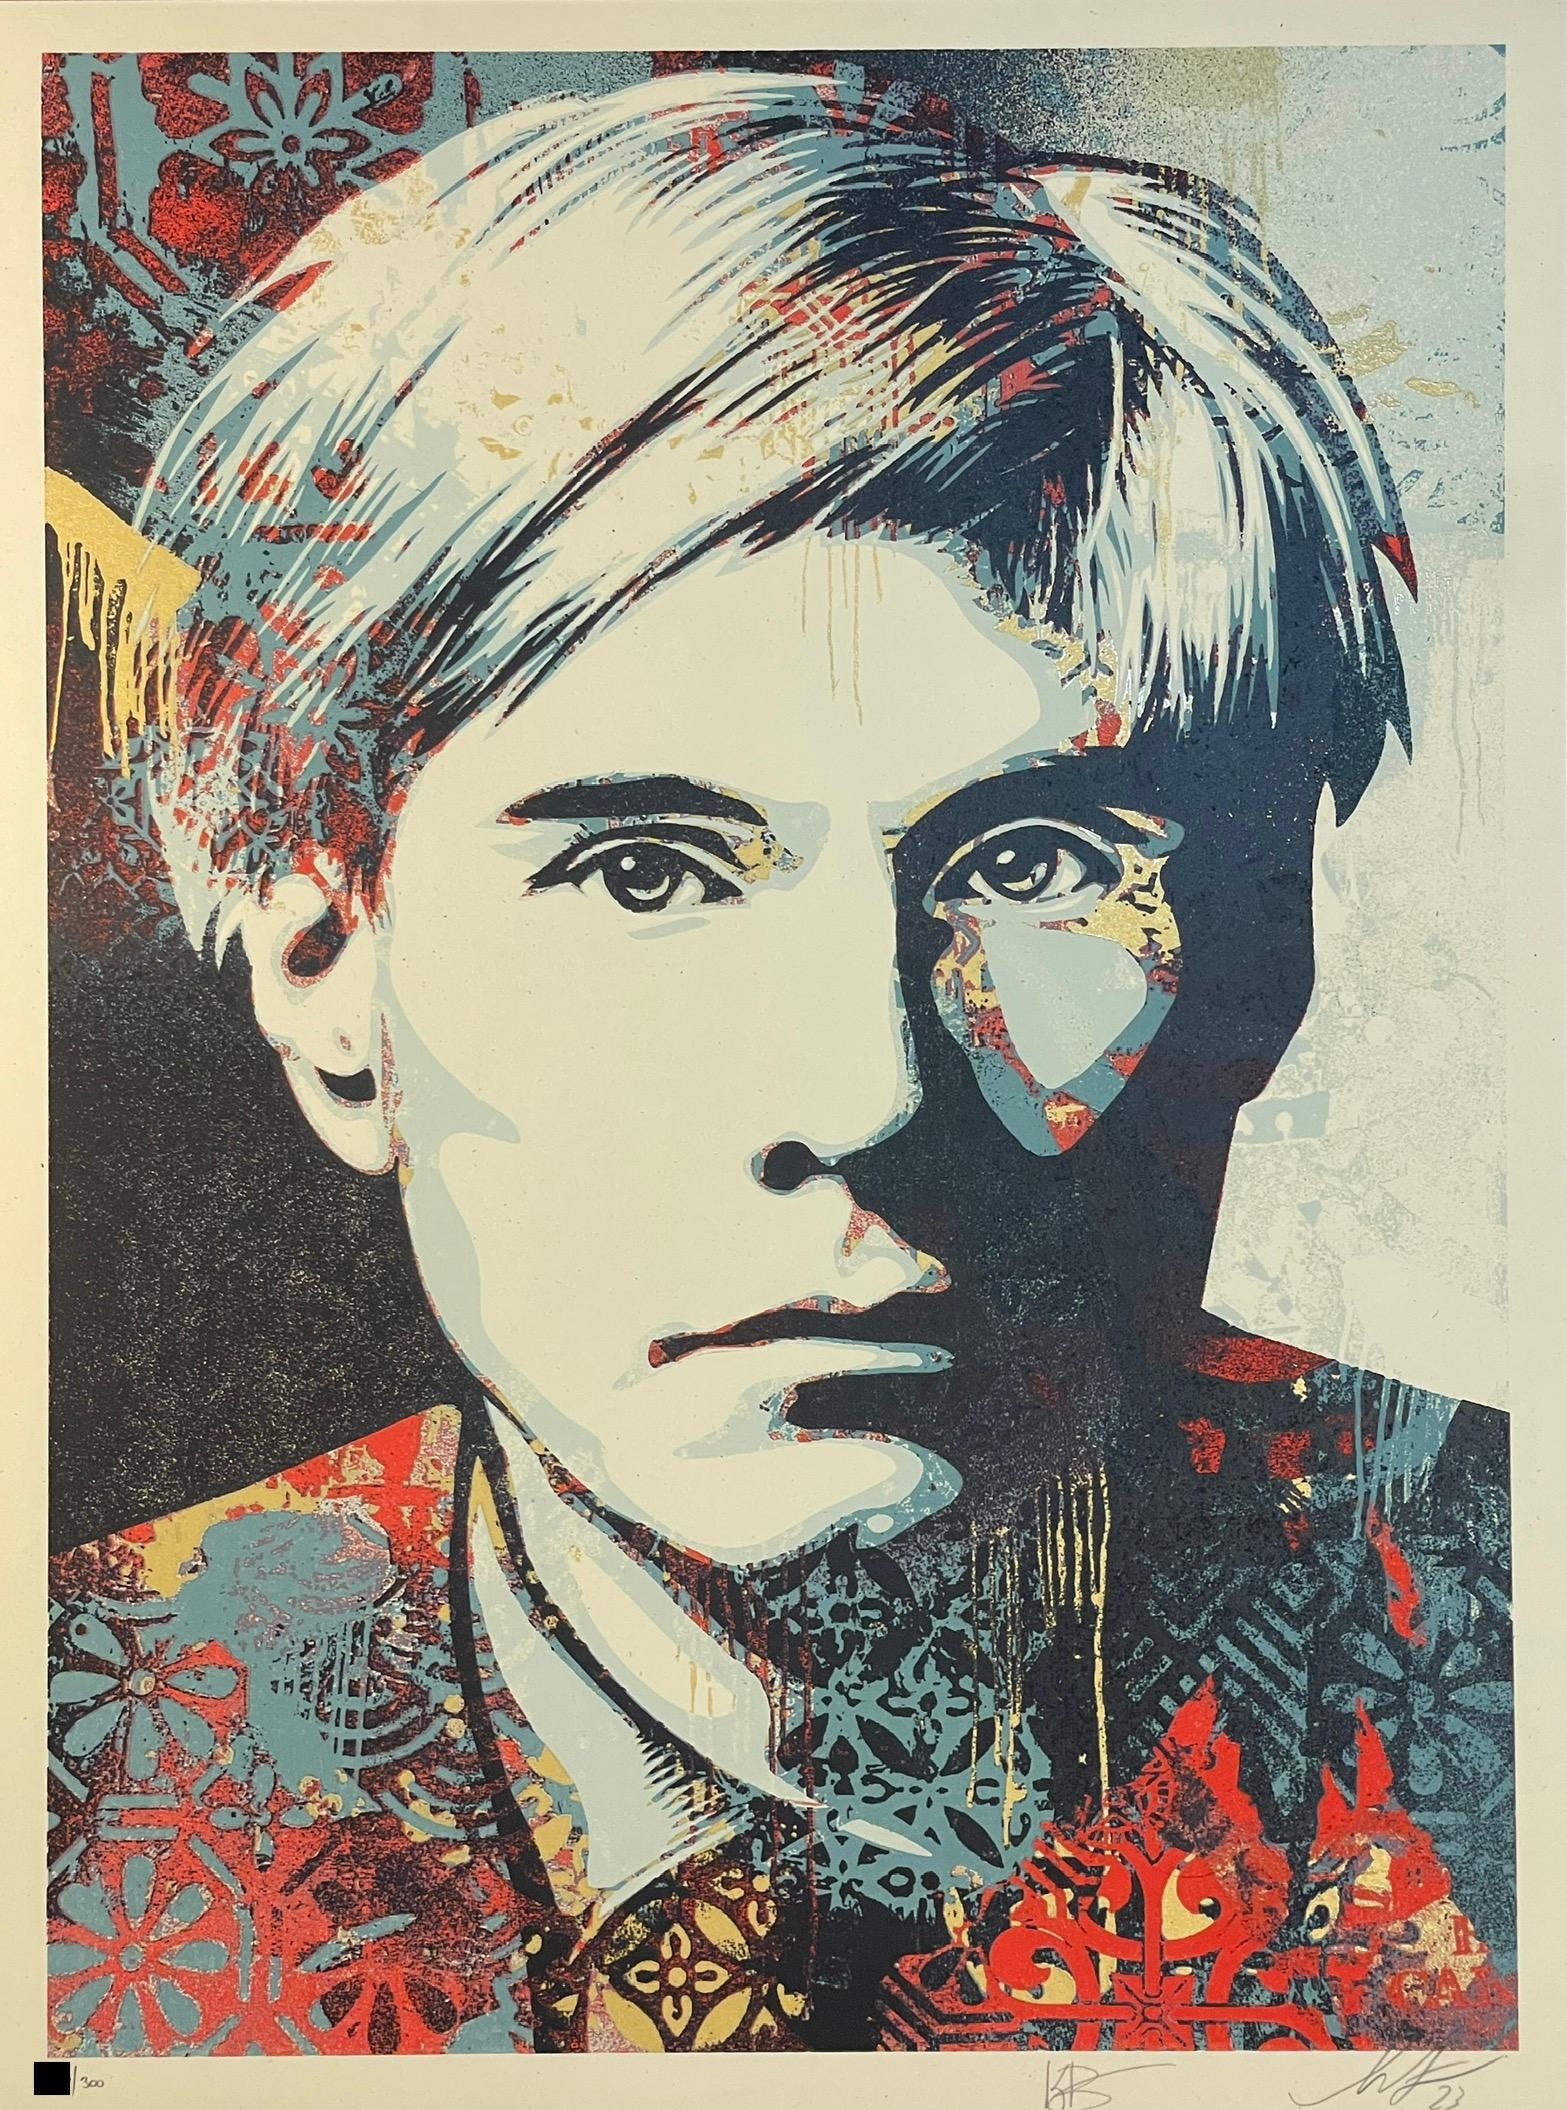 Shepard Fairey "Warhol Collage" Sérigraphie Art de rue contemporain Obey Giant